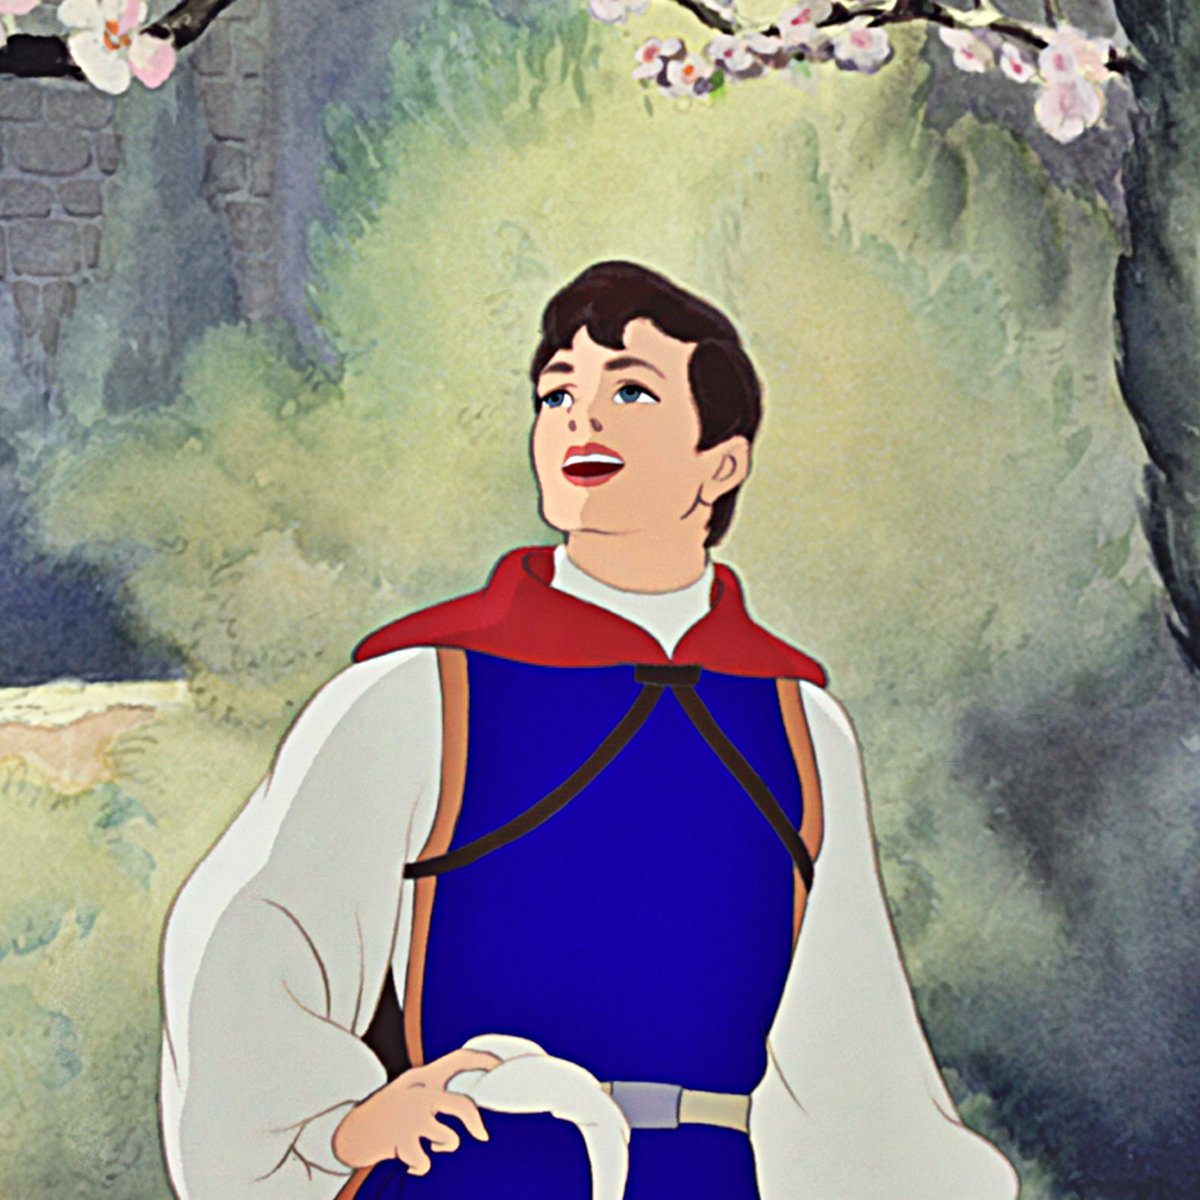 2. Prince Florian (Snow White)